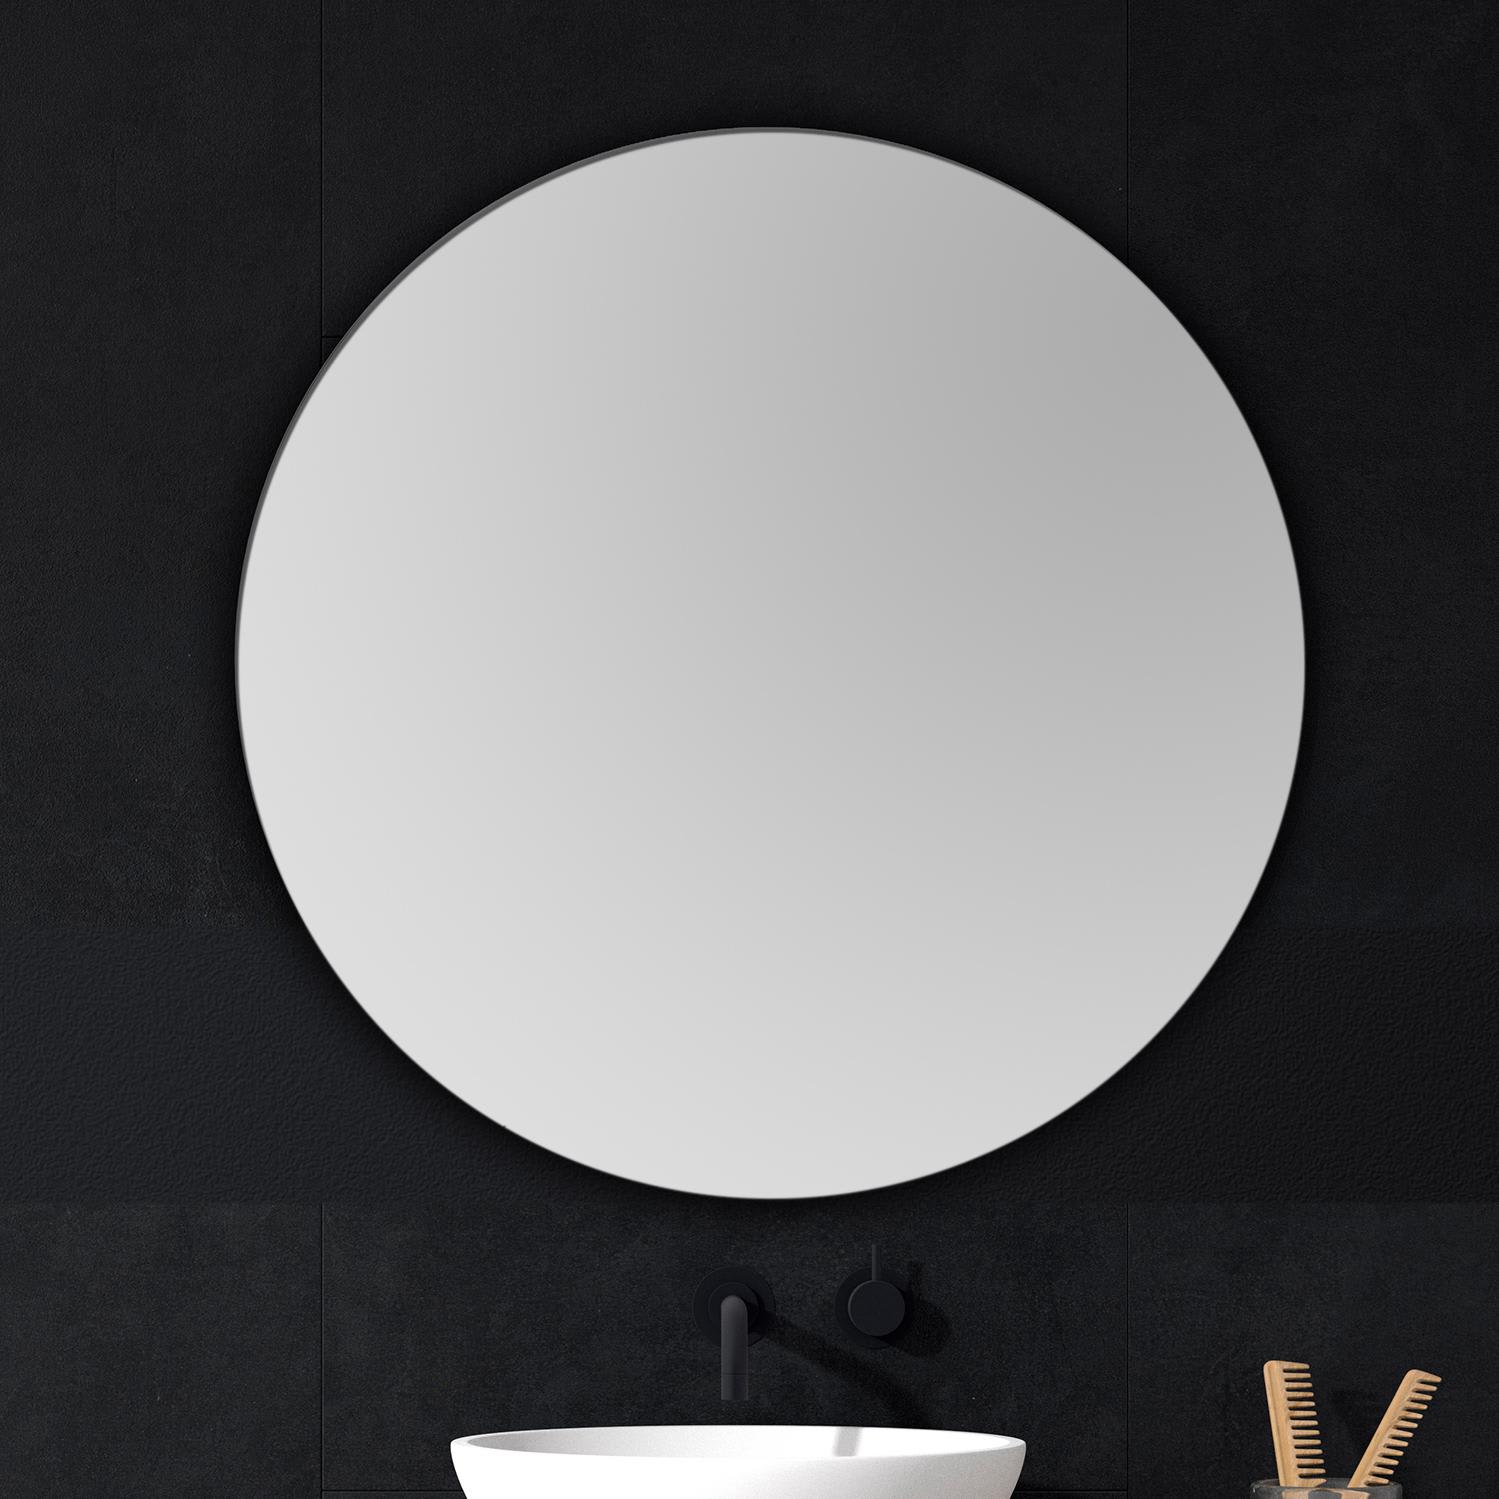 Espejo de baño Ovalado Cerdeña - Comprar espejos de baño.